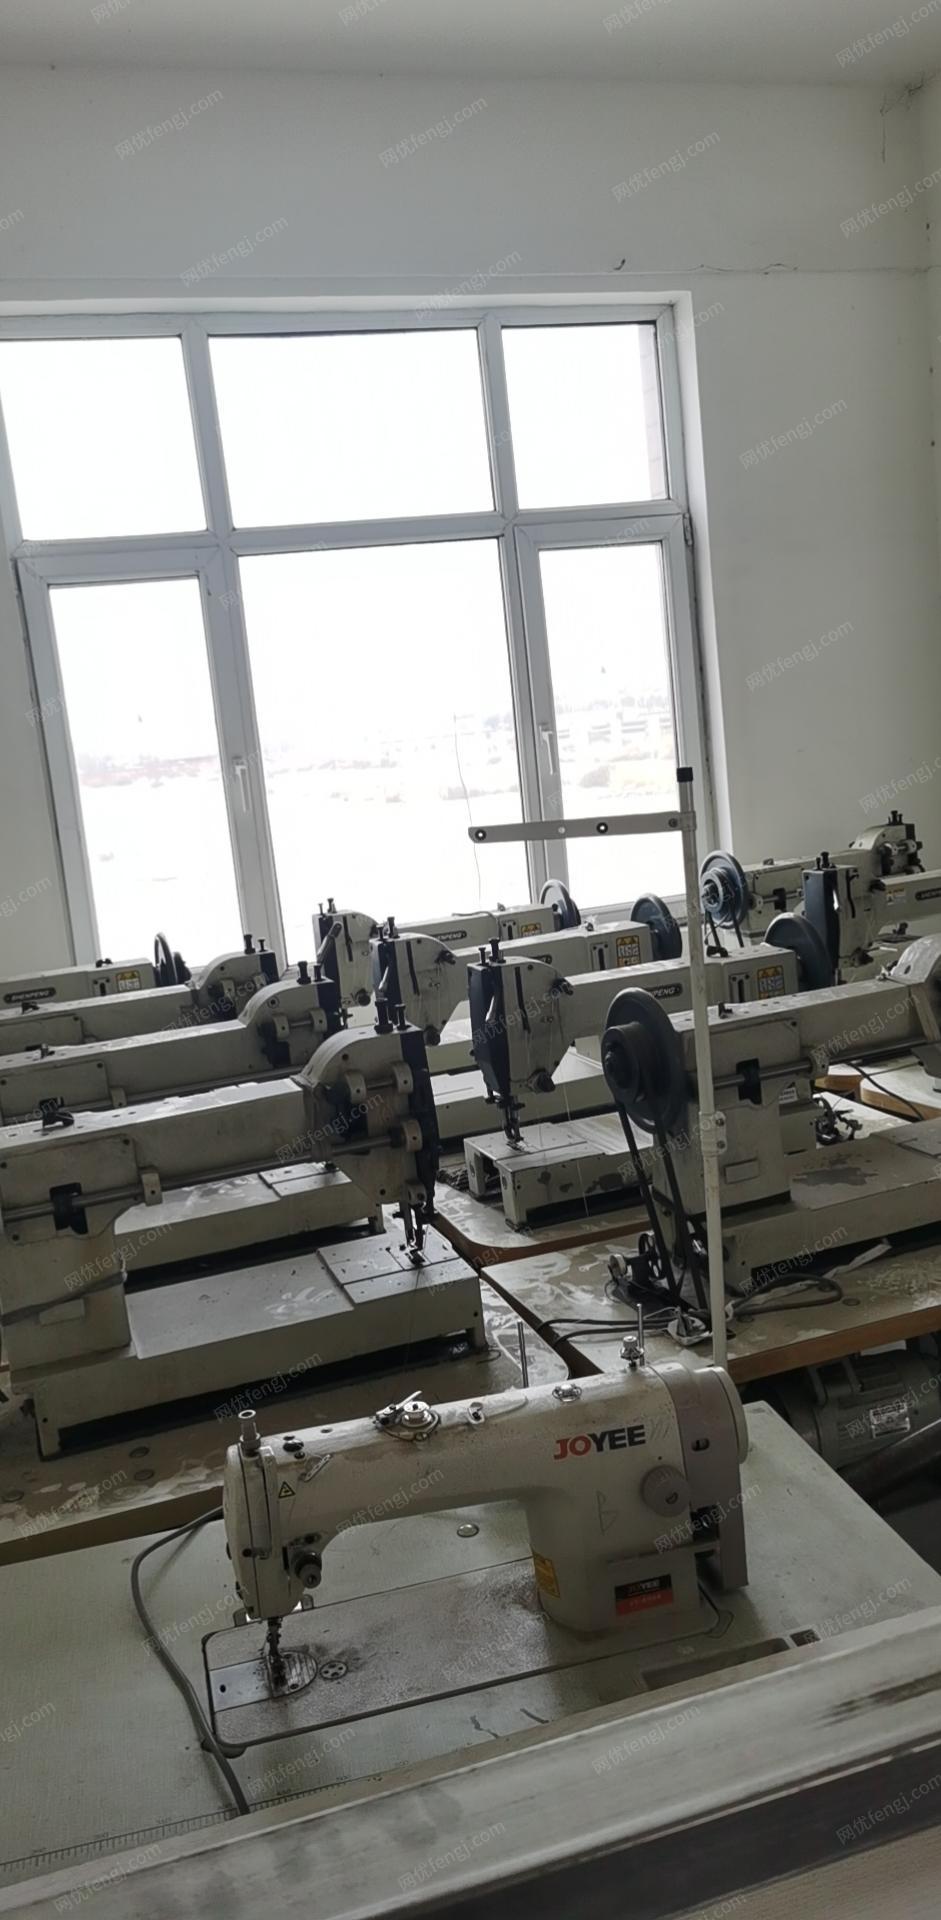 塑料编织袋厂出售缝纫机10台